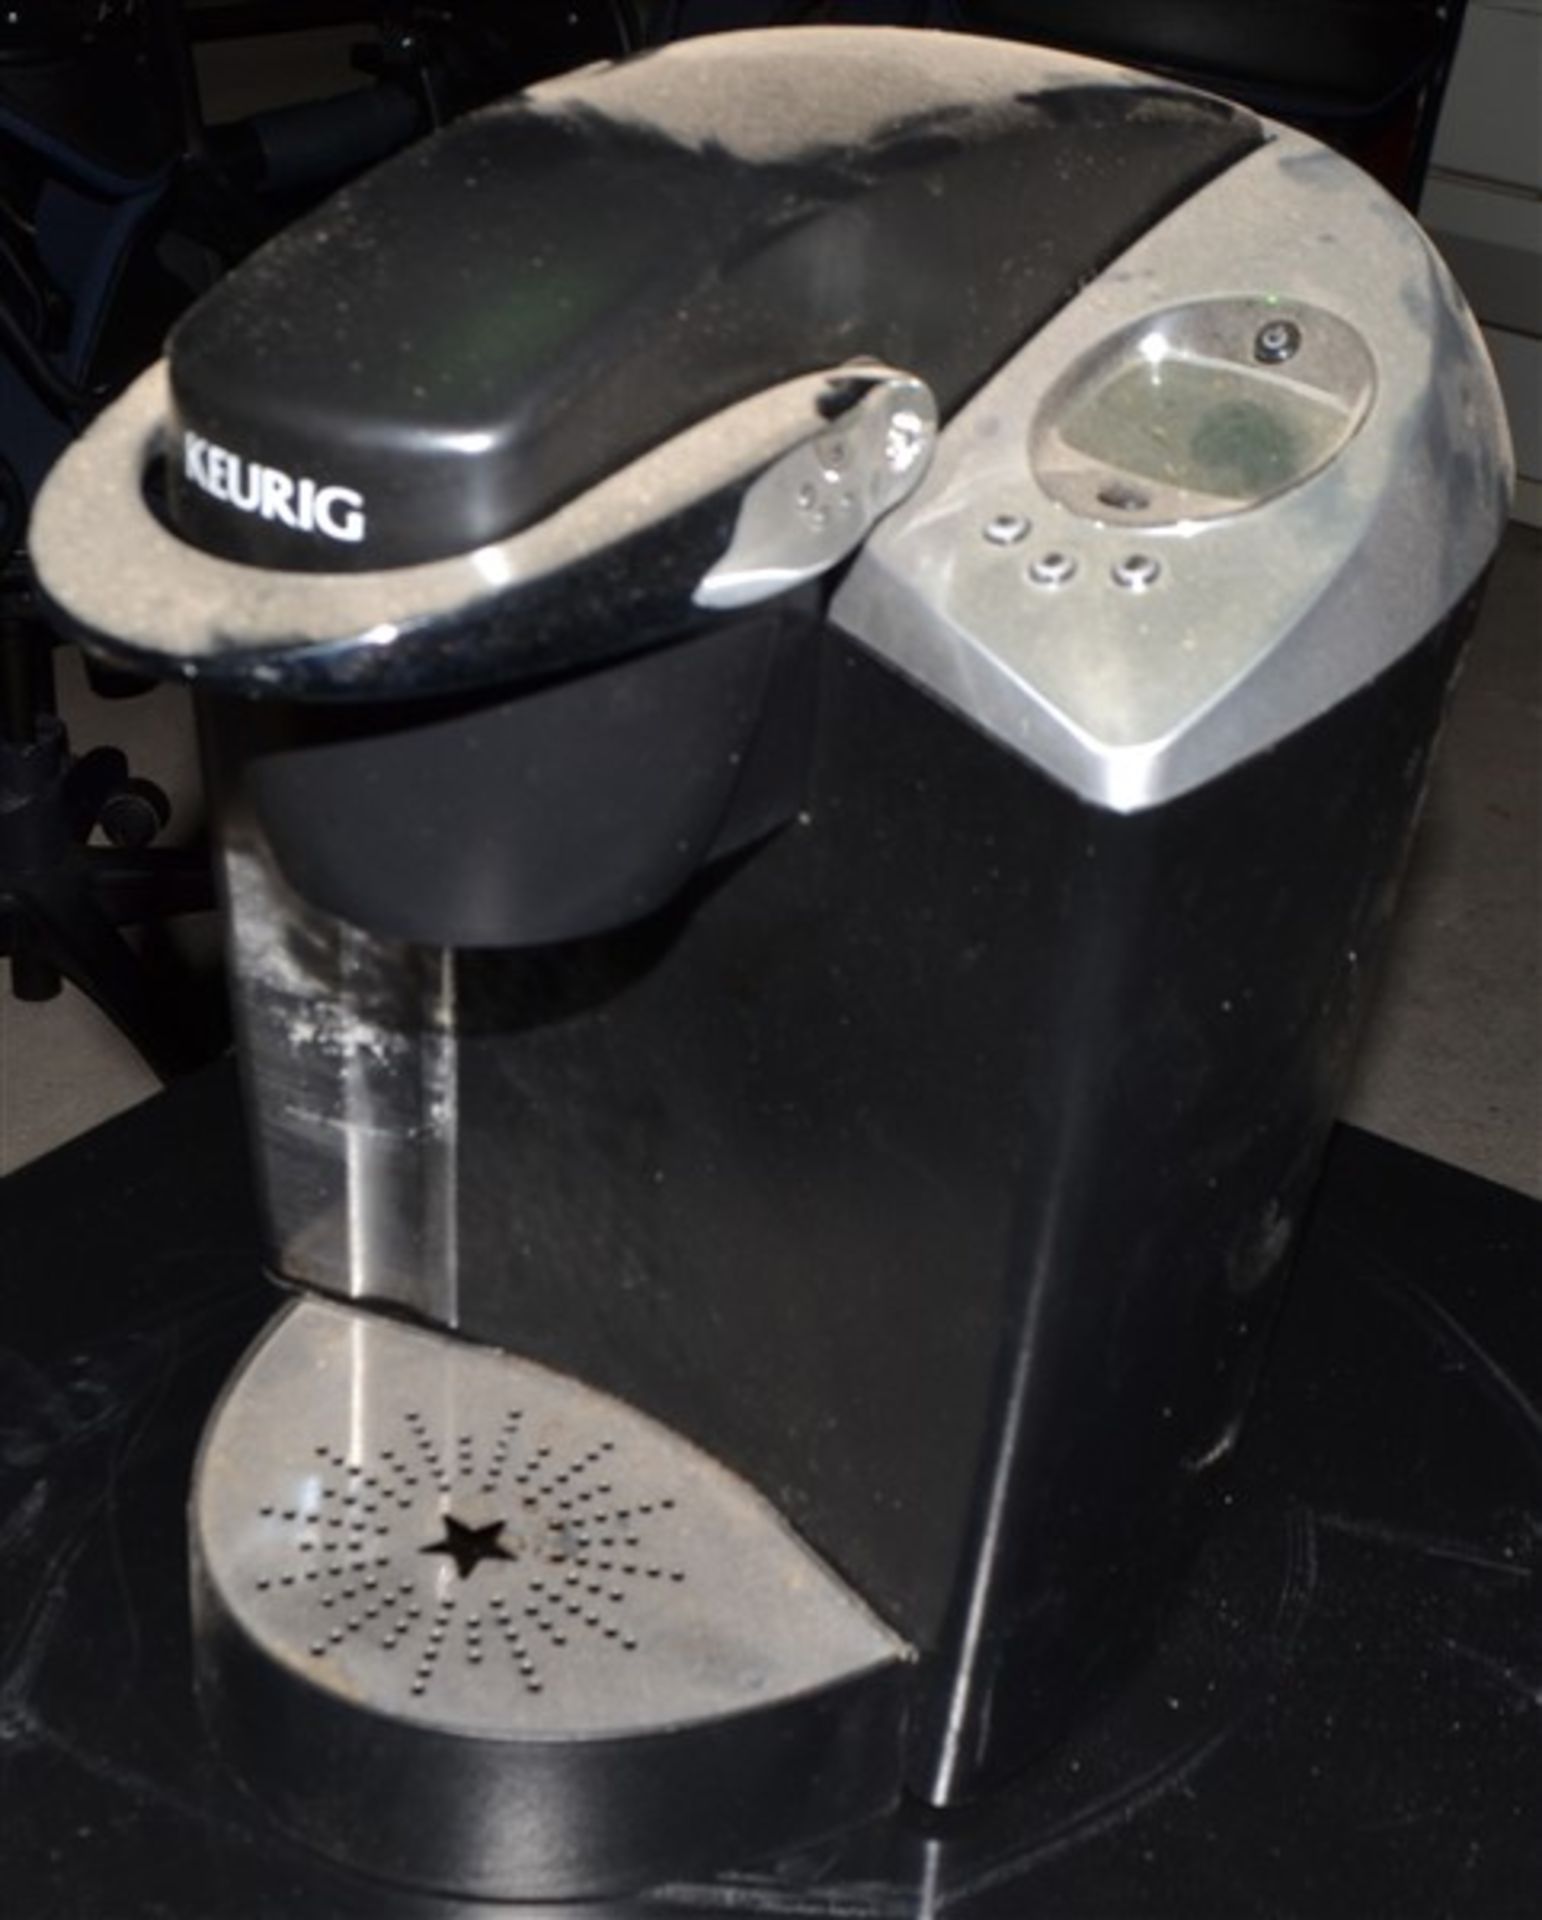 Keurig coffee machine - Image 2 of 2